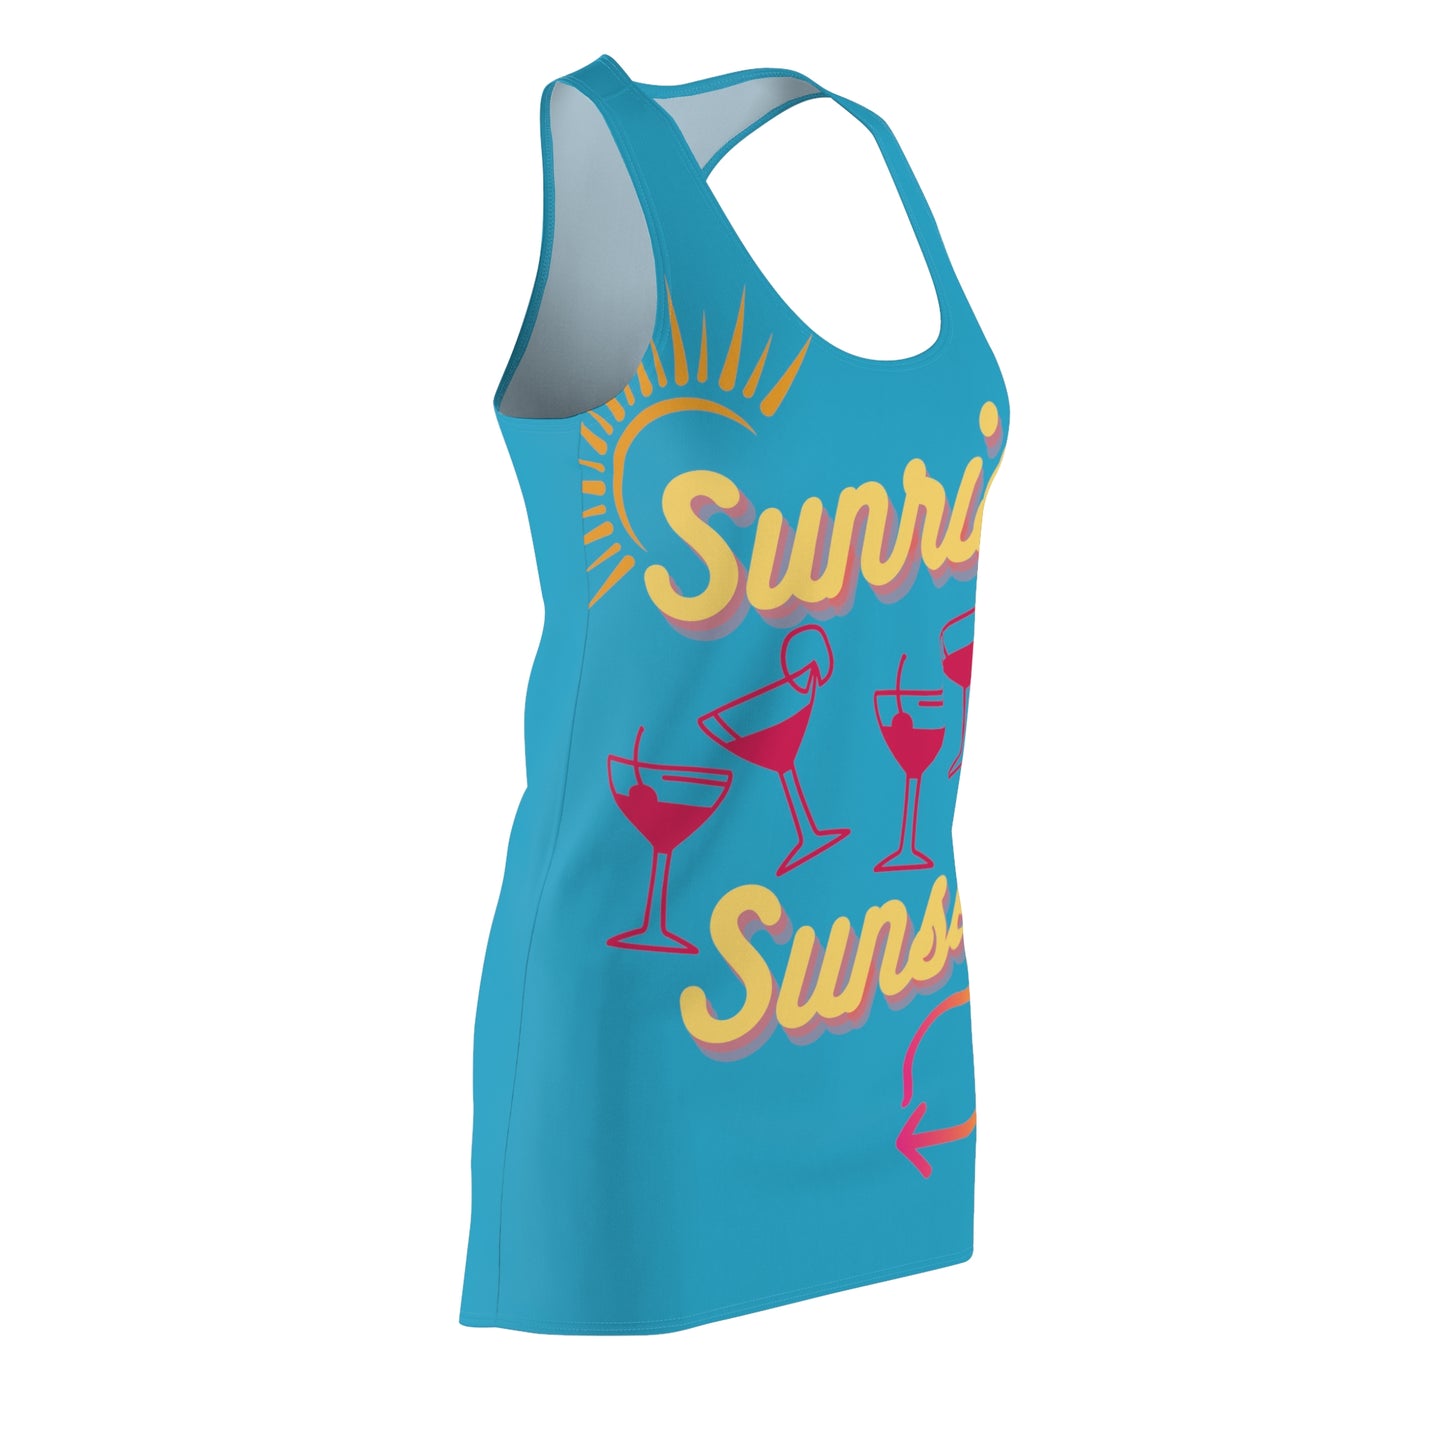 Beach Wear 02 Cut & Sew Racerback Dress (Turquoise)